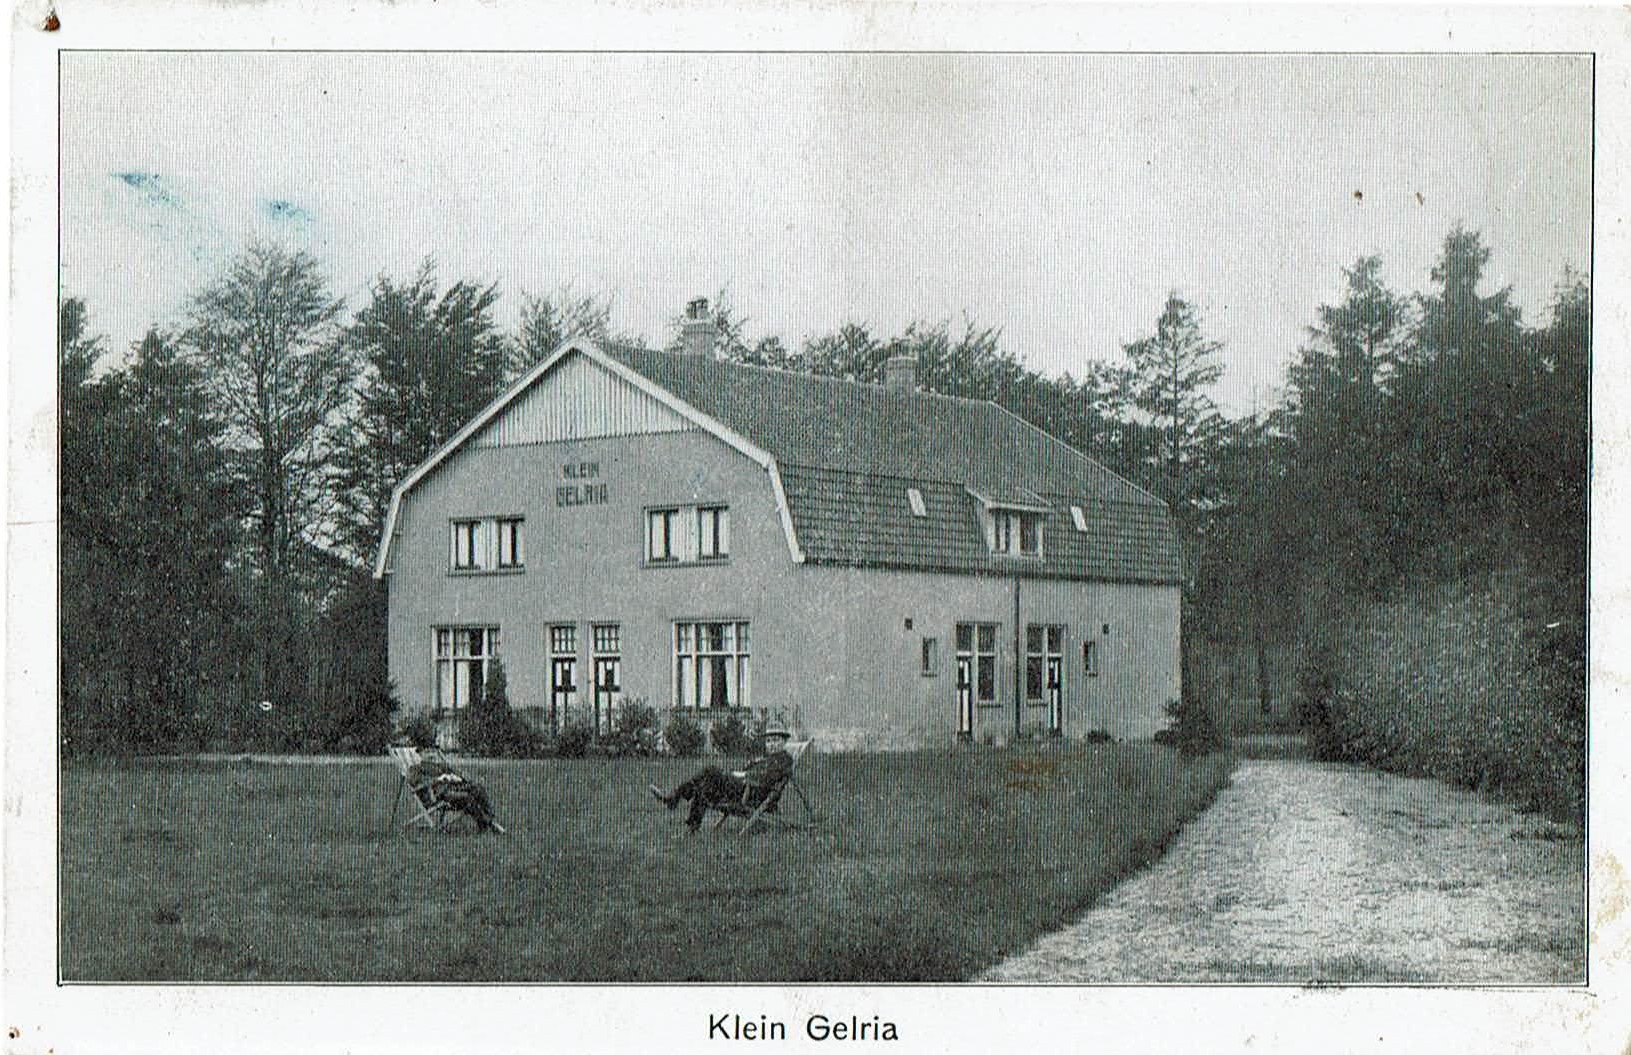 Klein Gelria